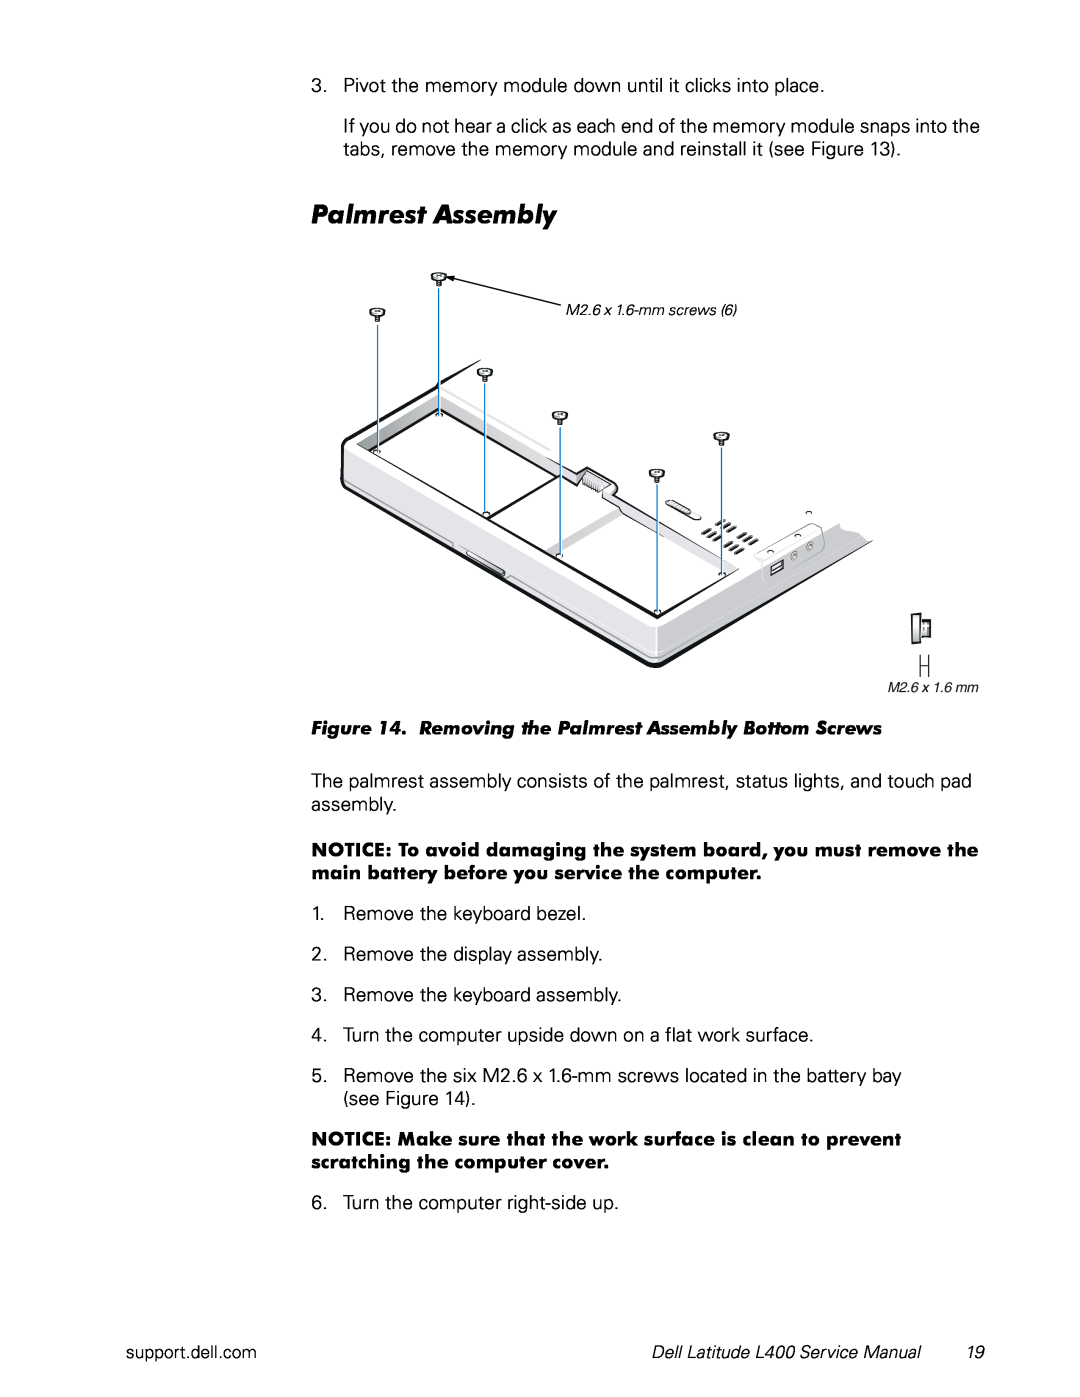 Dell L400 service manual Palmrest Assembly 